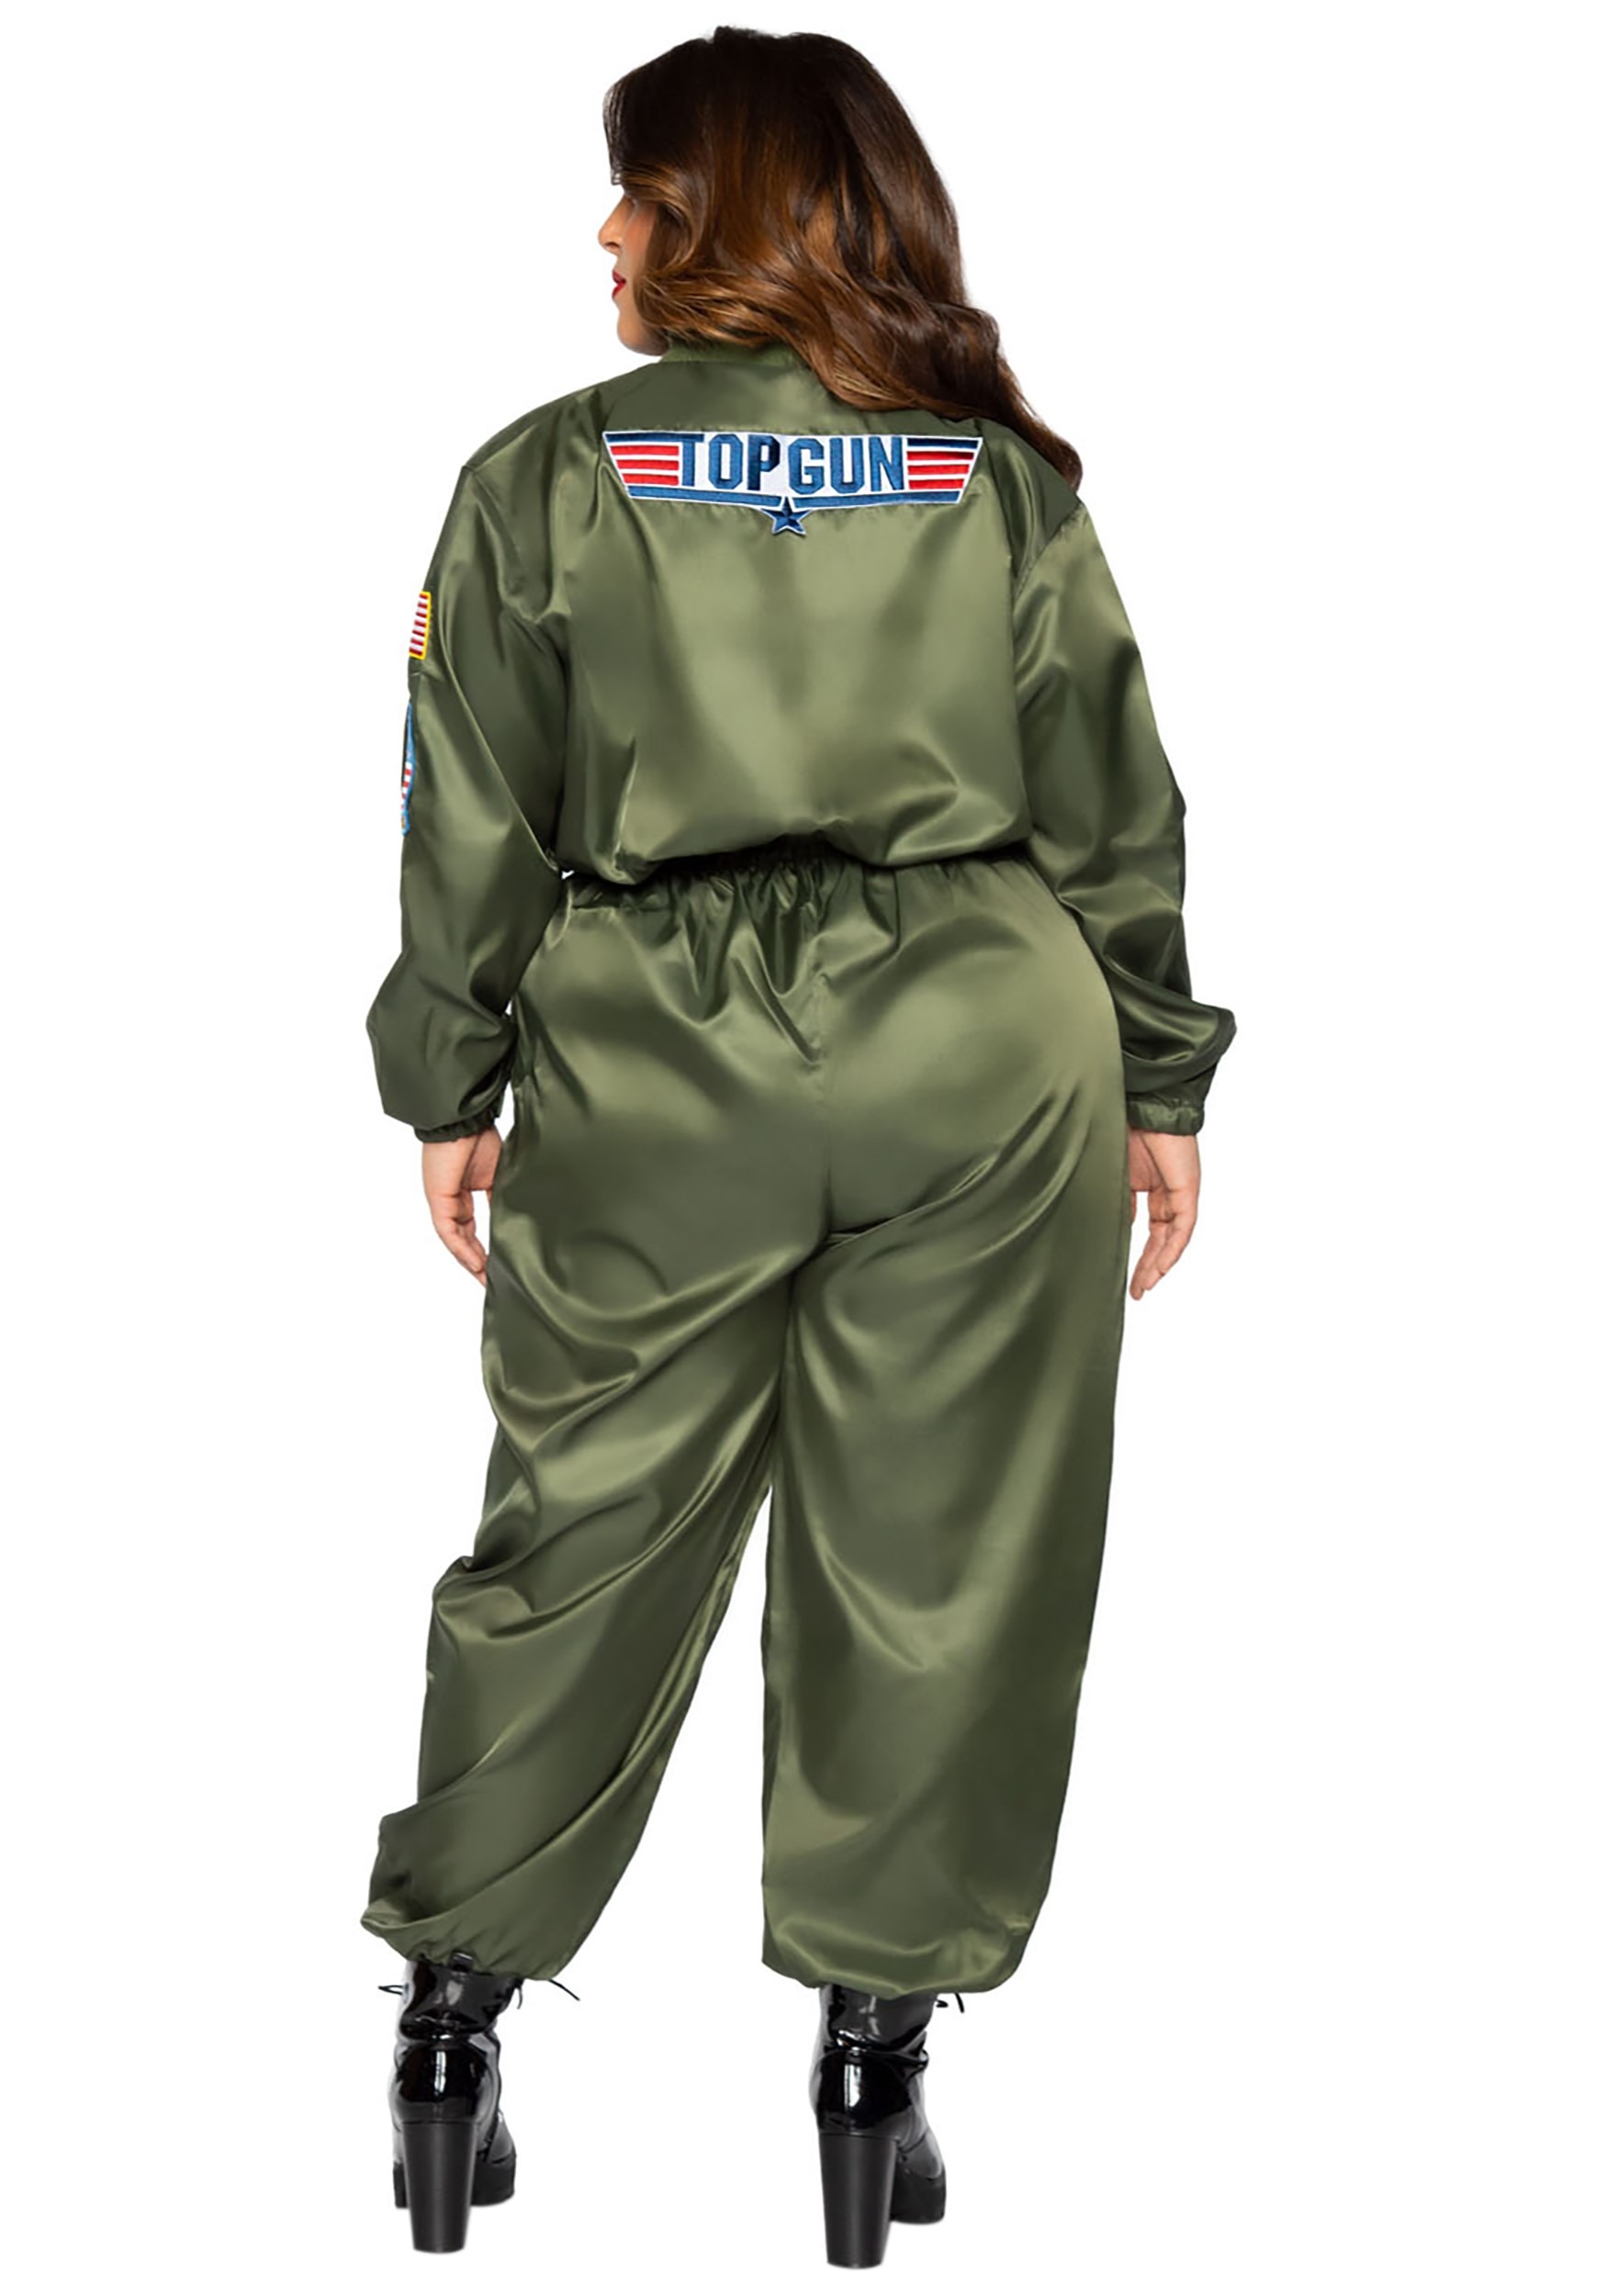 TOPGUN: (1986) MAVERICK's 'Pre-Graduation' Flight Suit Patches